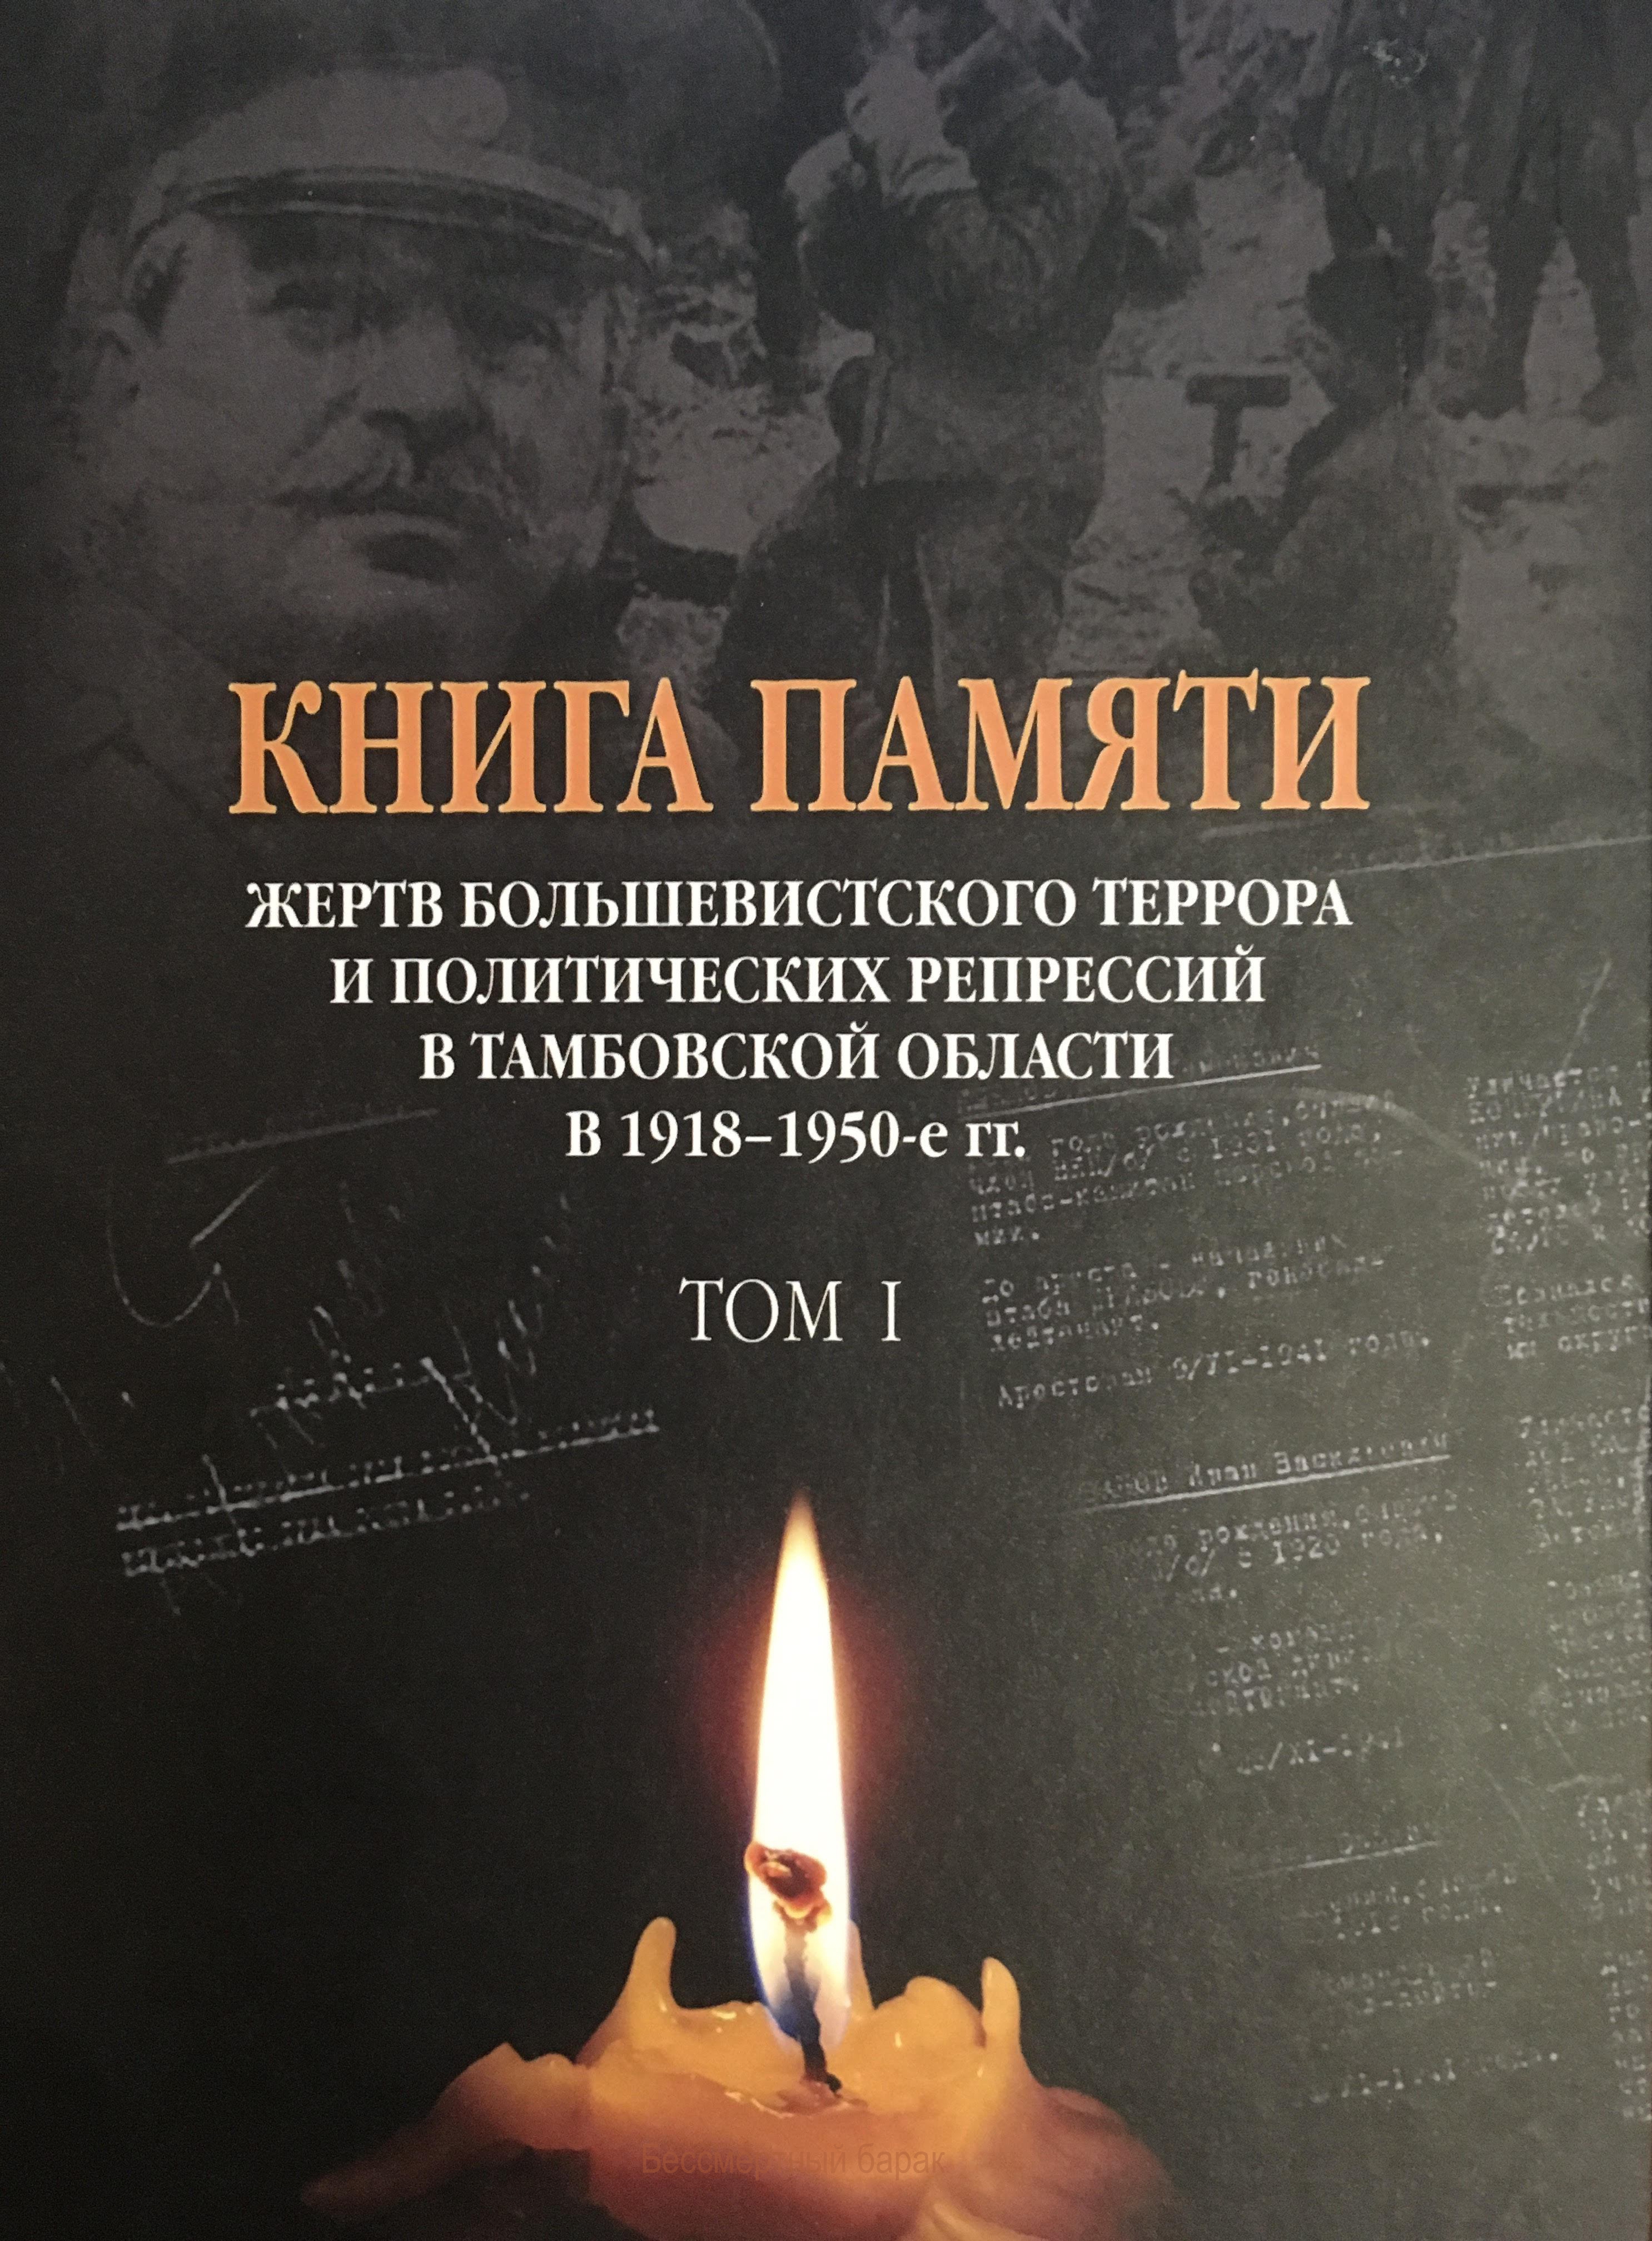 Книга памяти Тамбовской области